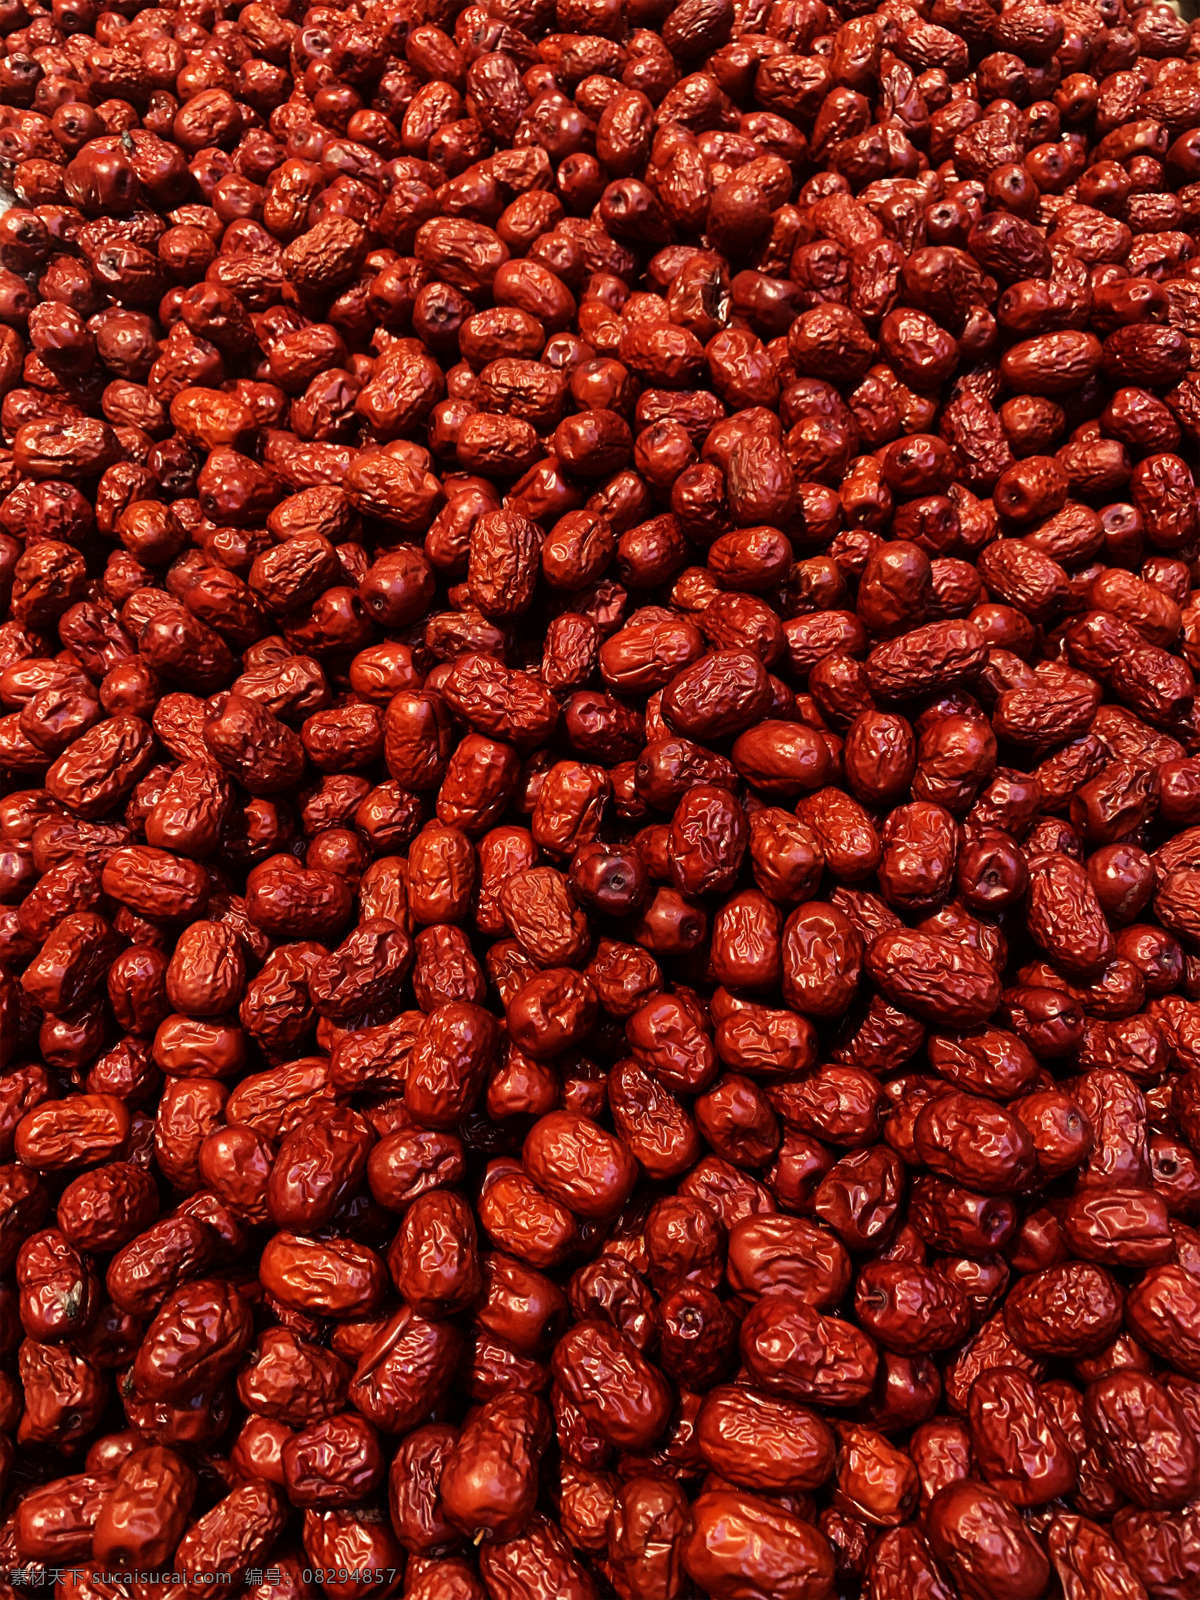 红枣图片 红枣 小红枣 灰枣 一堆红枣 一堆灰枣 小灰枣 新疆红枣 干枣 生物世界 水果